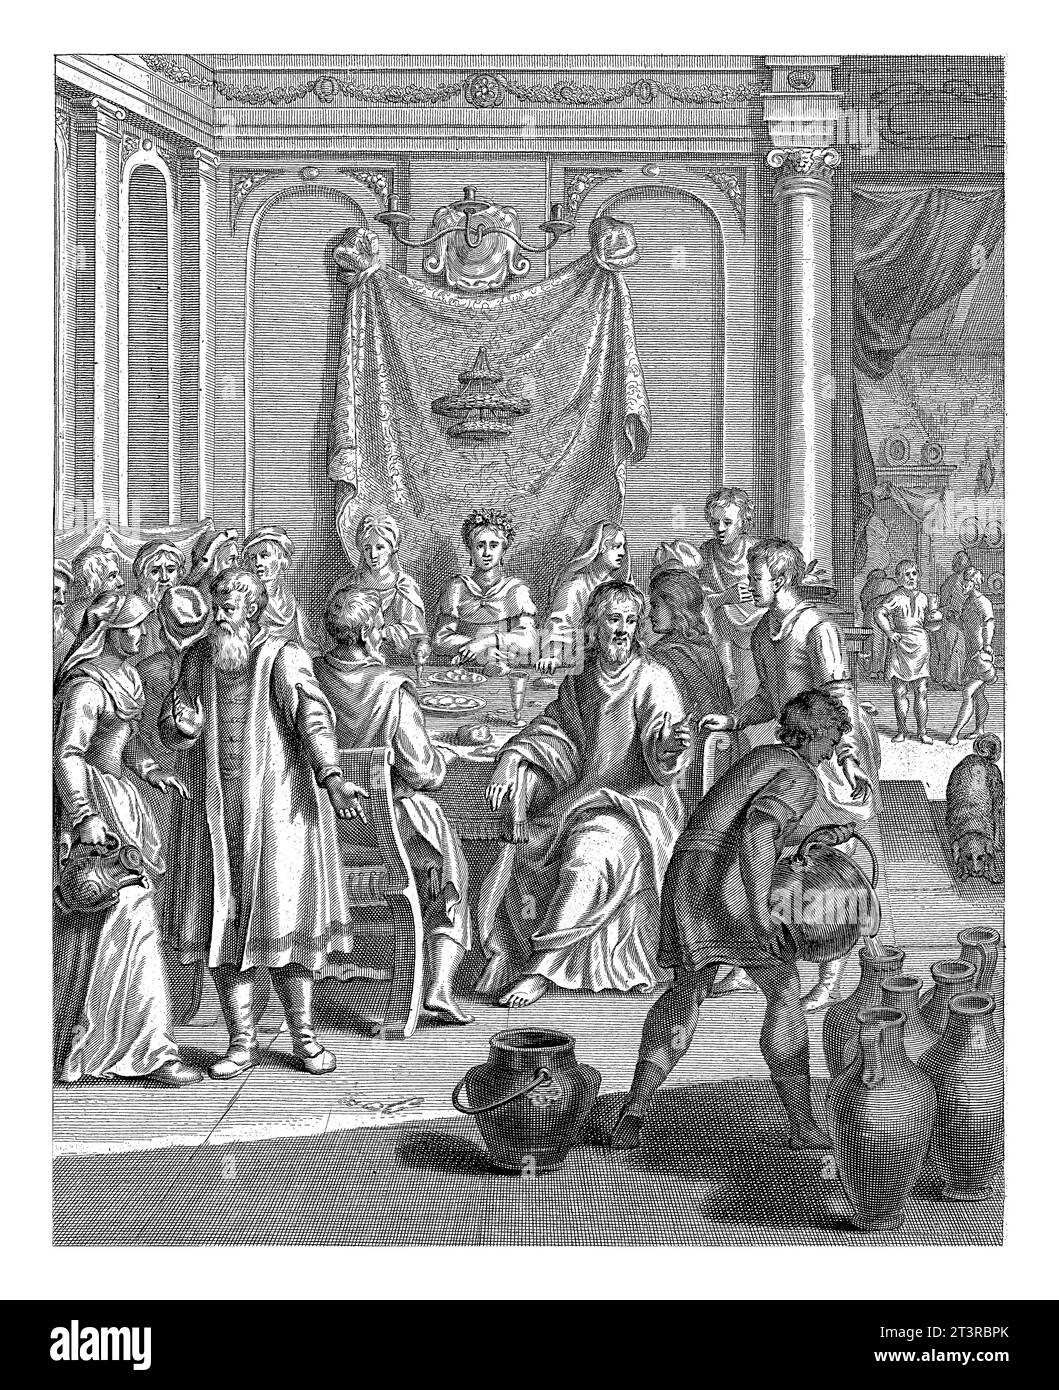 Hochzeit in Kana, Christiaan Hagen, 1670 - 1672 Christus, der während der Hochzeit in Kana an einem Tisch sitzt, gibt den Befehl, Gläser mit Wasser zu füllen, was h Stockfoto